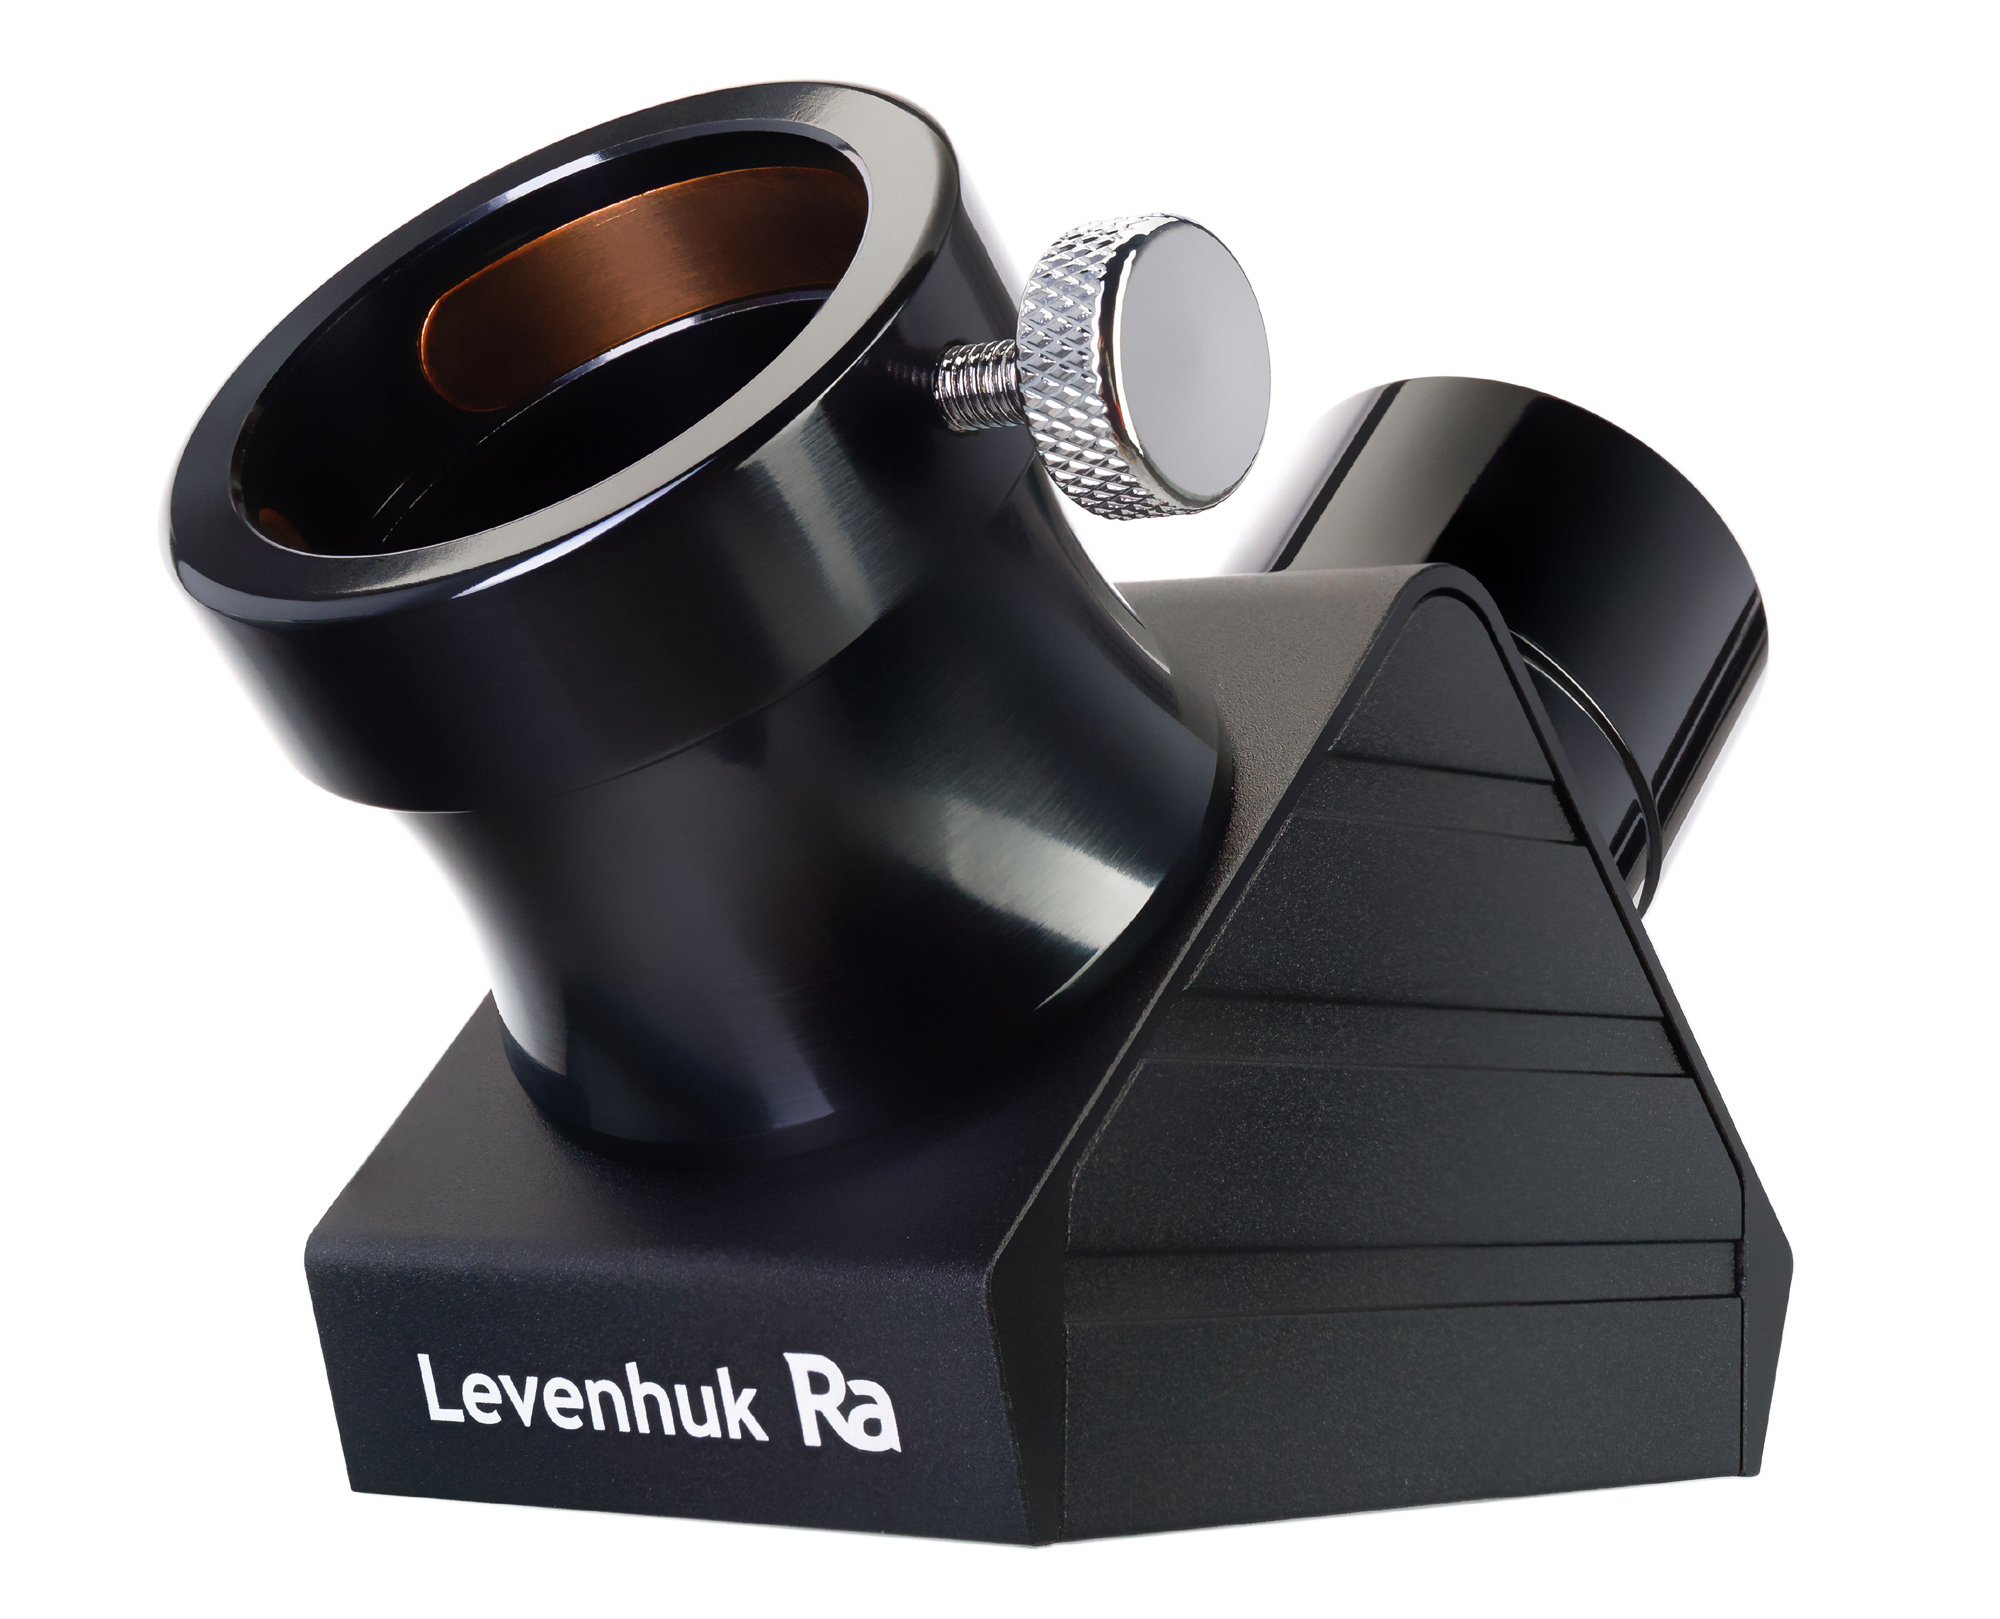 Levenhuk Ra R80 ED Doublet Kit v3 купить по оптимальной цене,  доставка по России, гарантия качества